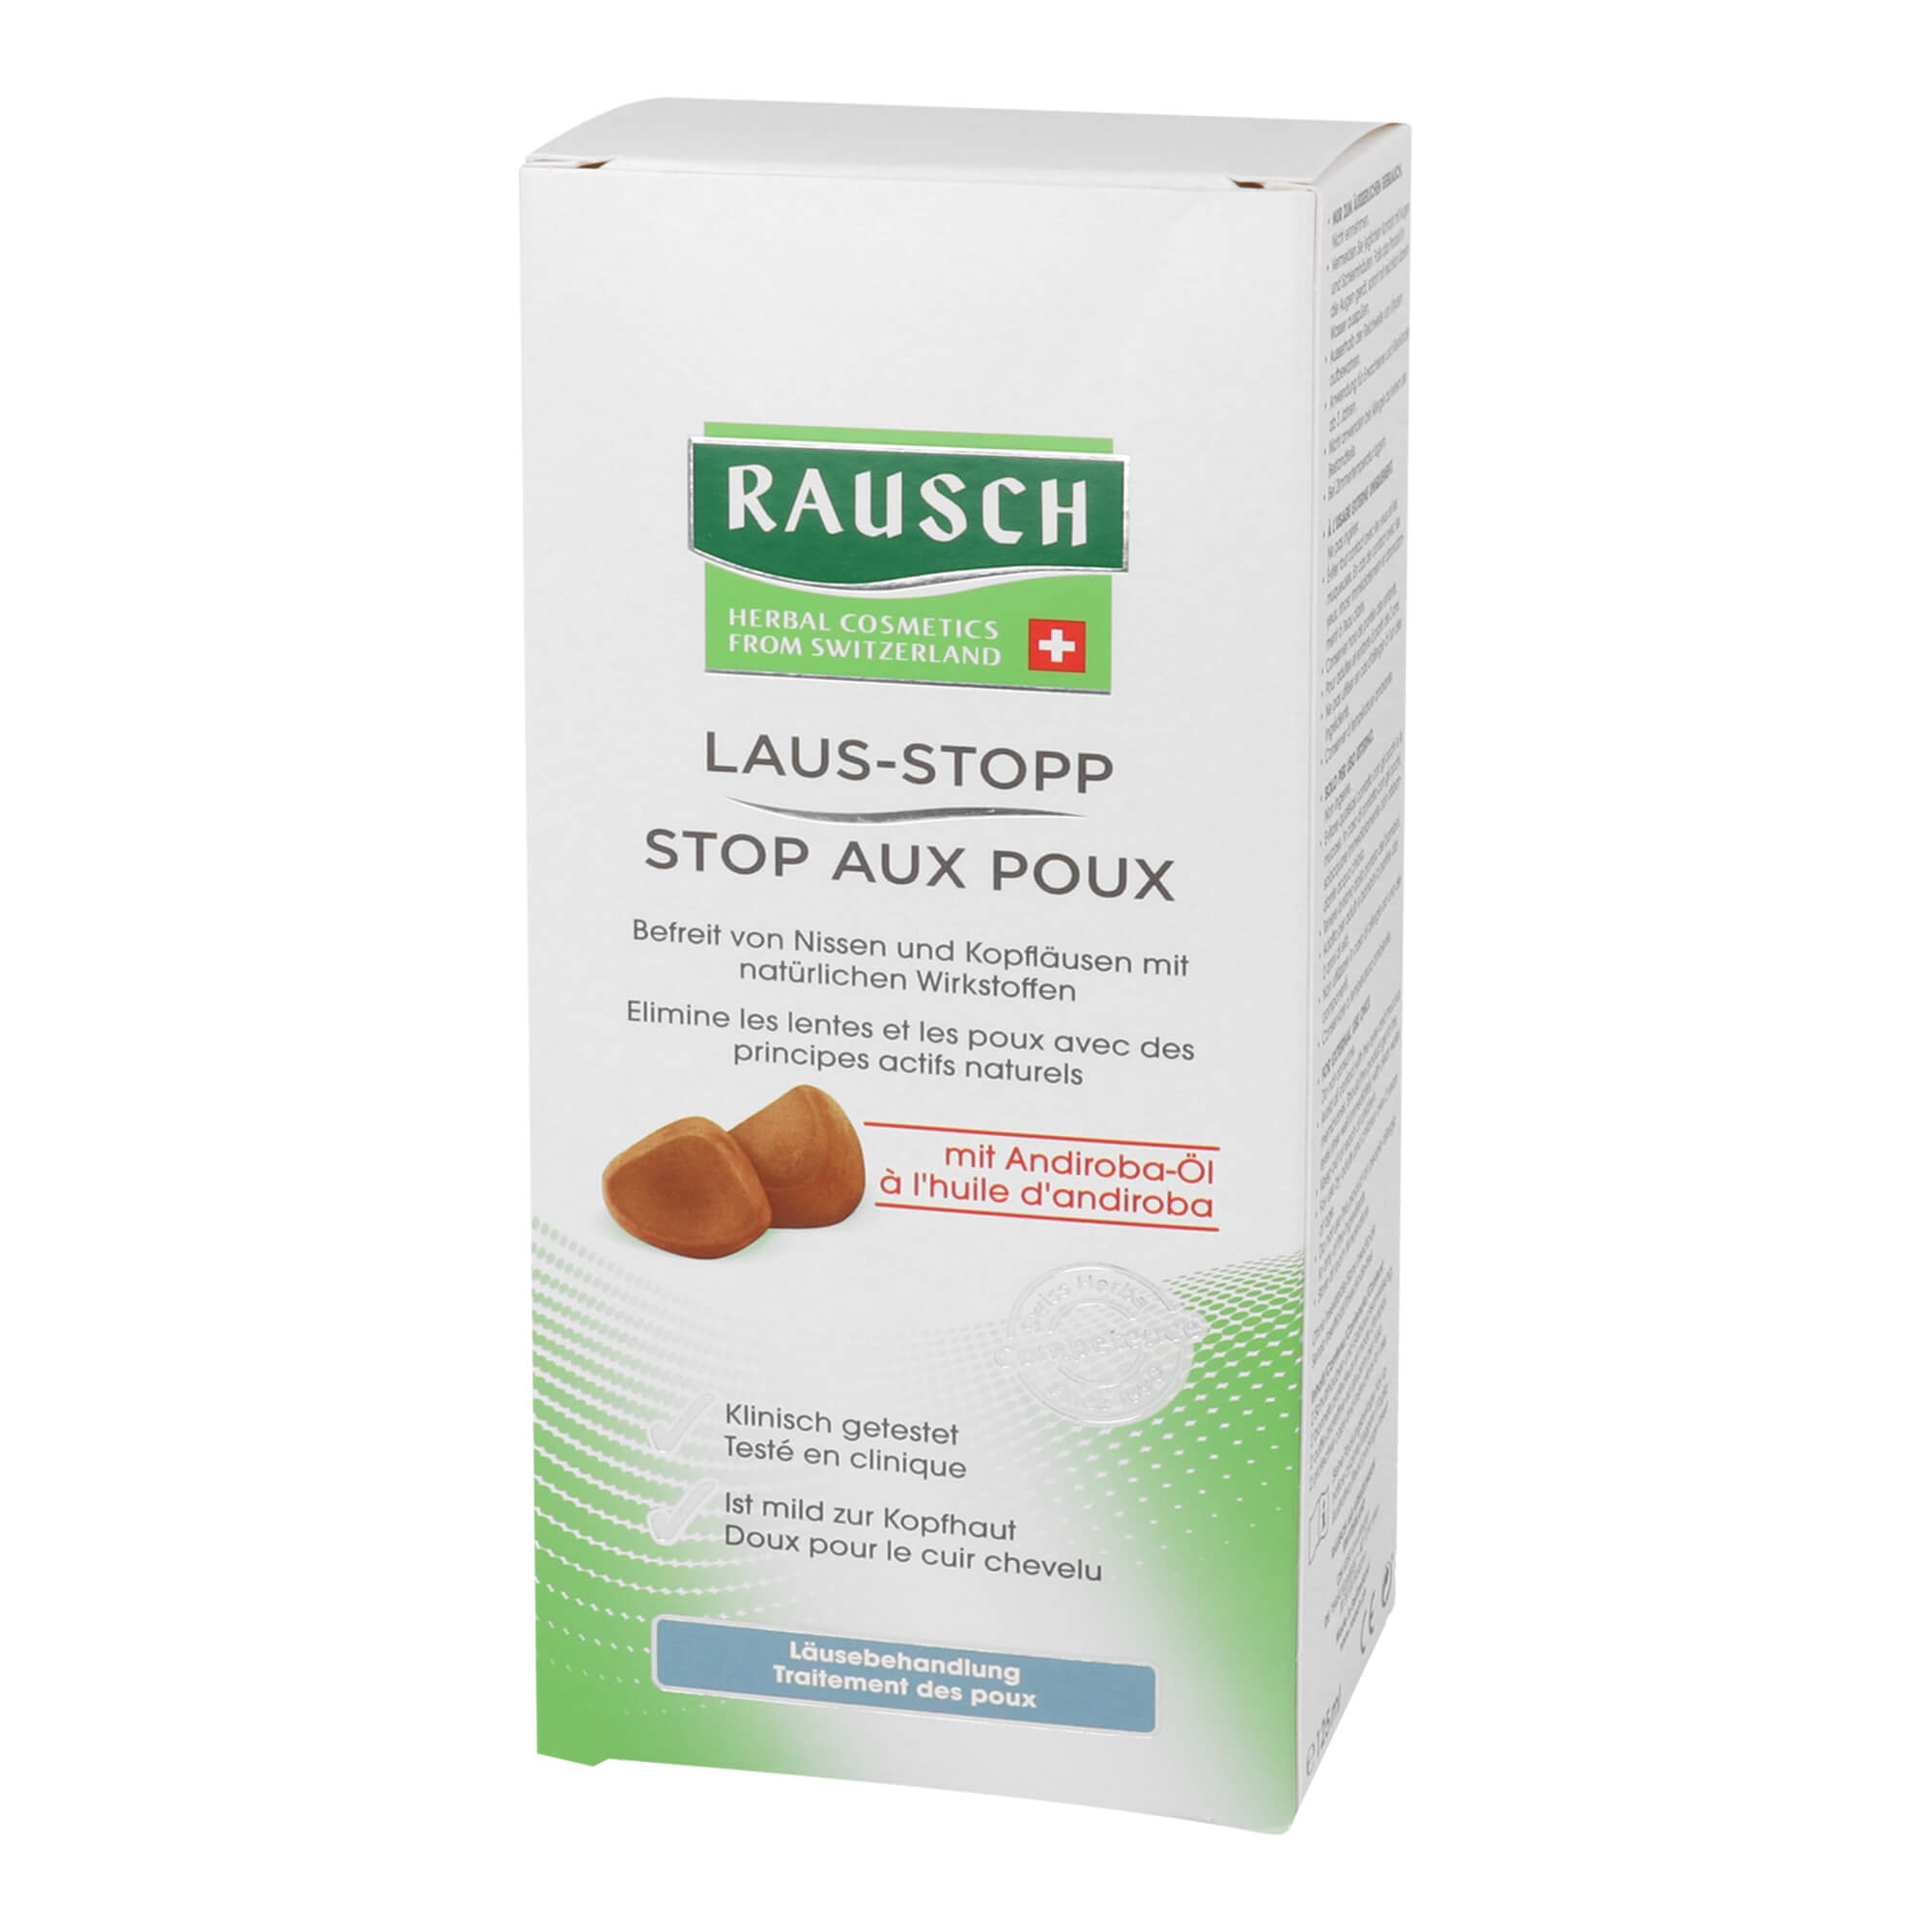 Rausch Laus-Stopp